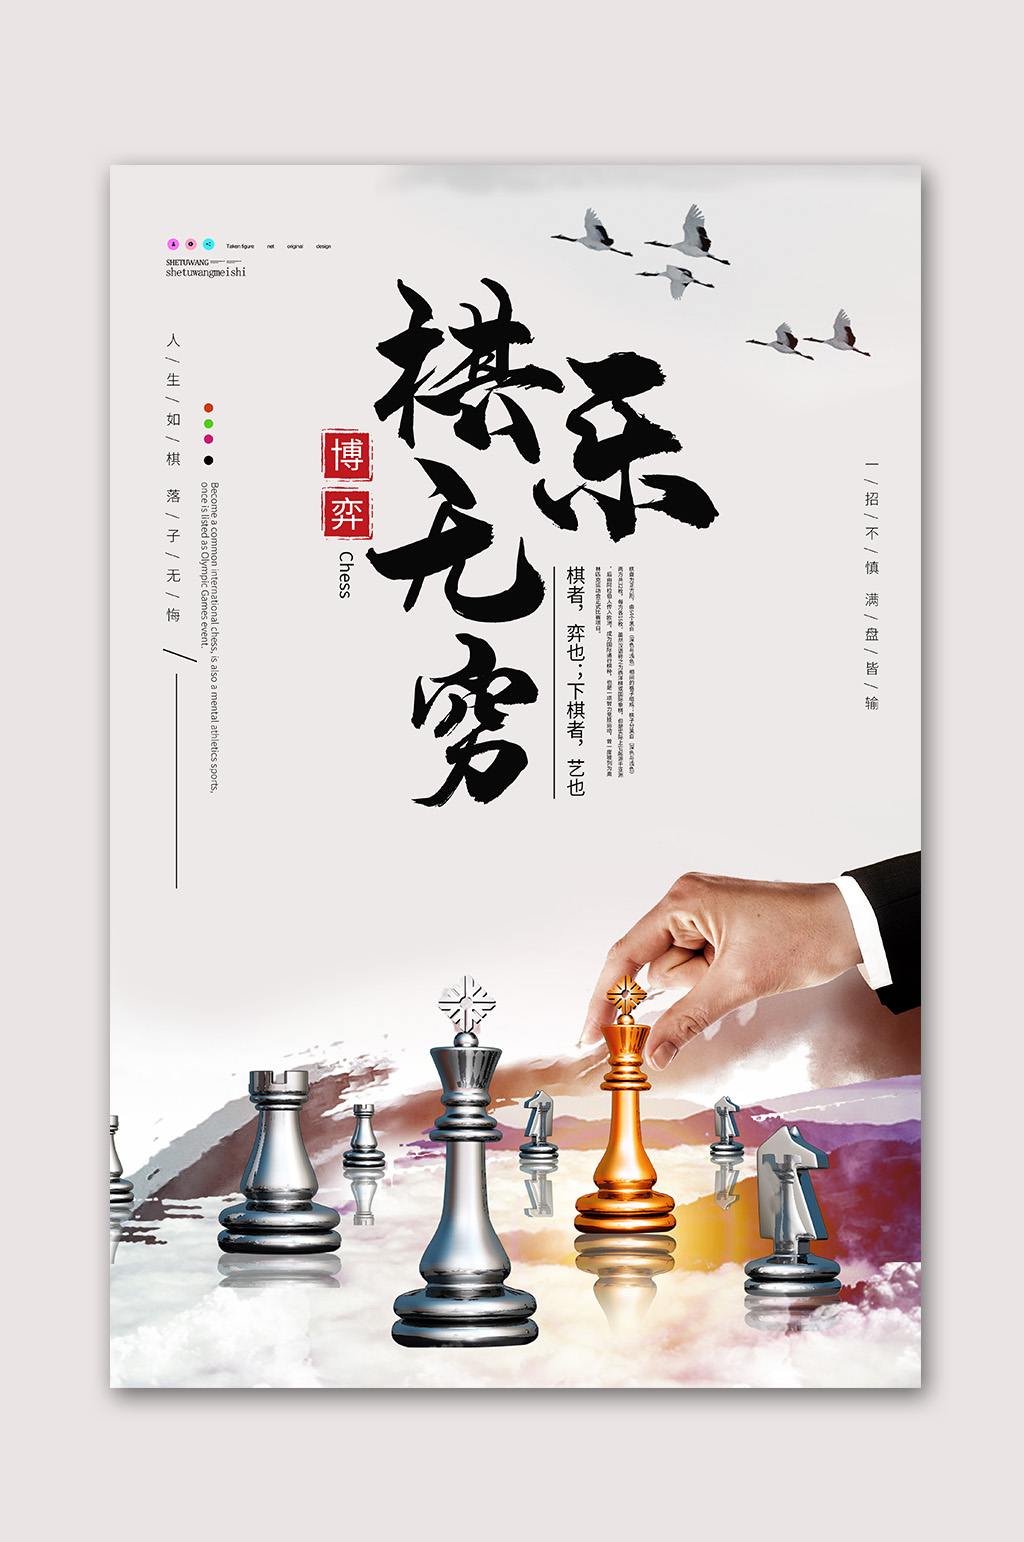 棋乐无穷国际象棋海报